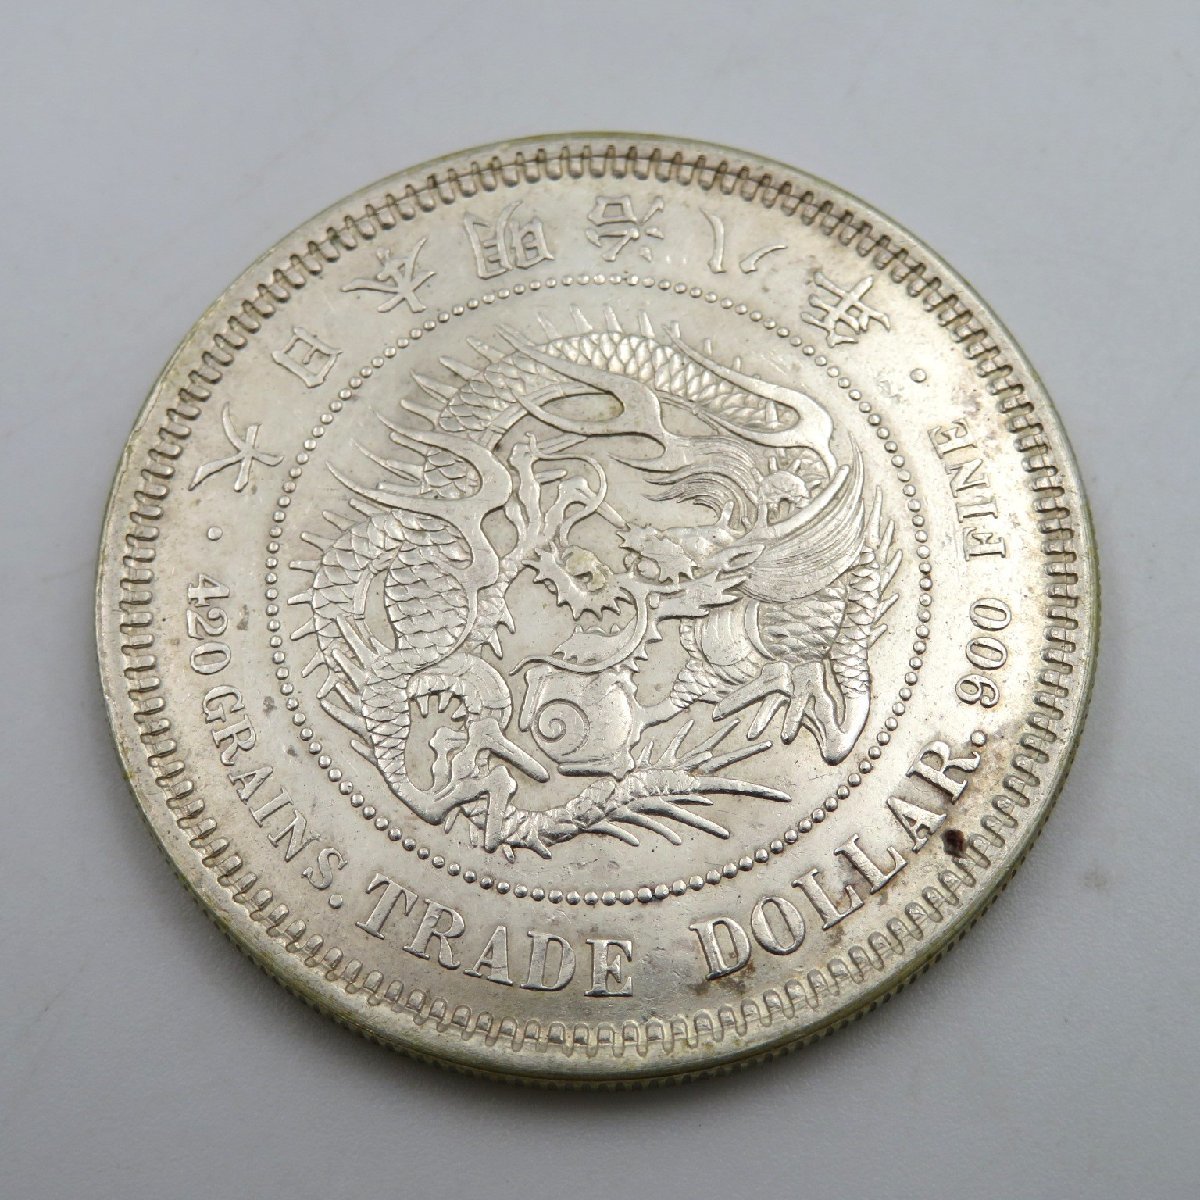 お気に入り 2つのチョップマークを持つ古い日本の貿易ドル 旧貨幣/金貨